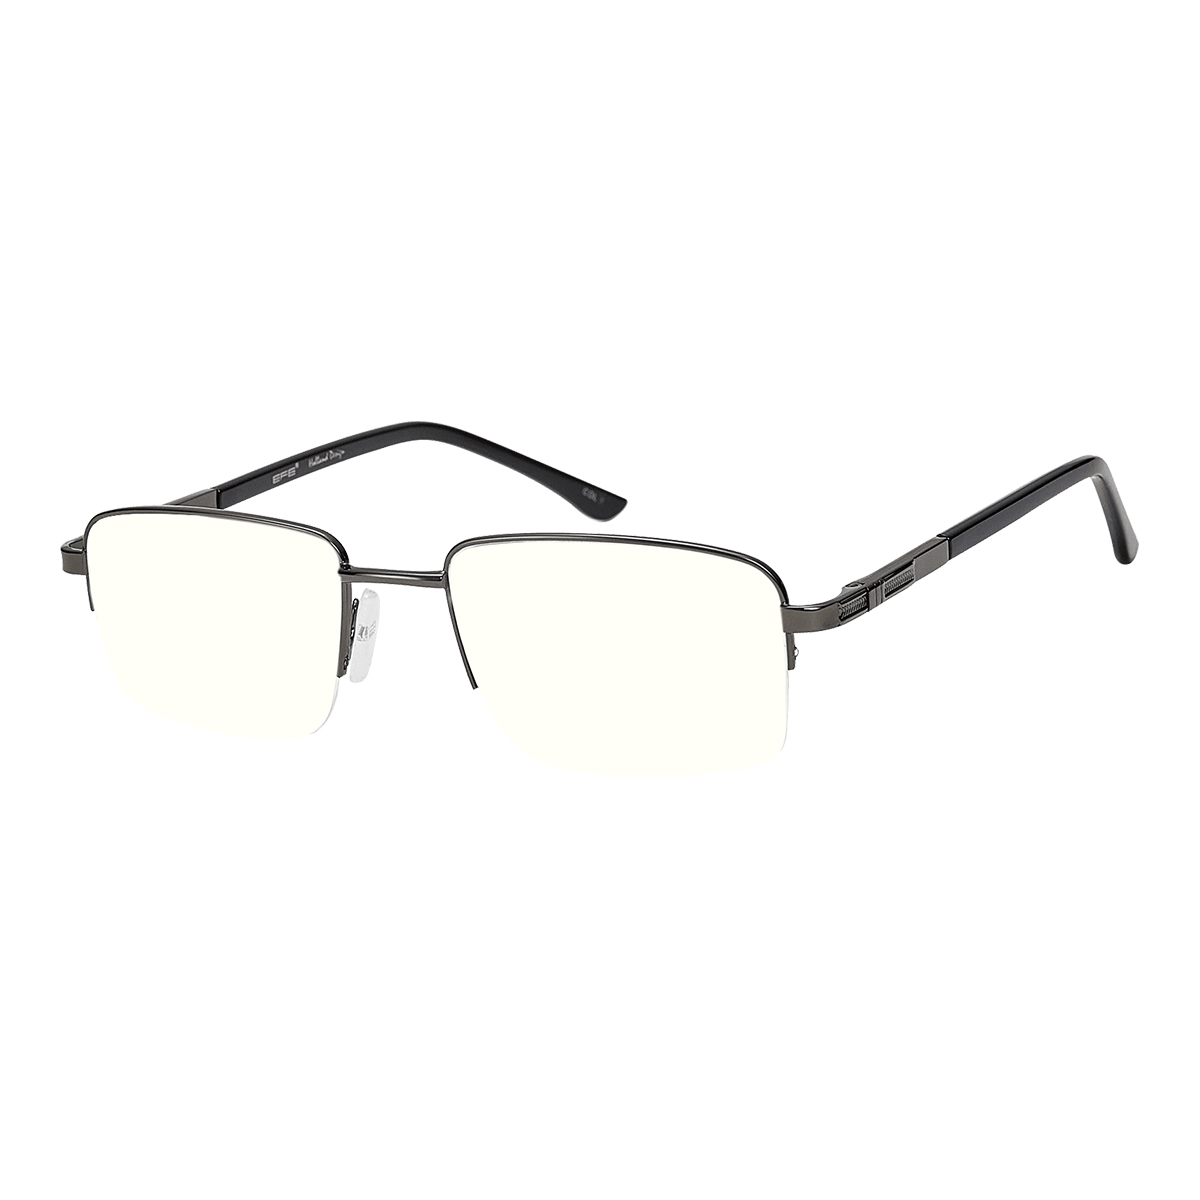 Siuph - Rectangle Gray Reading Glasses for Men